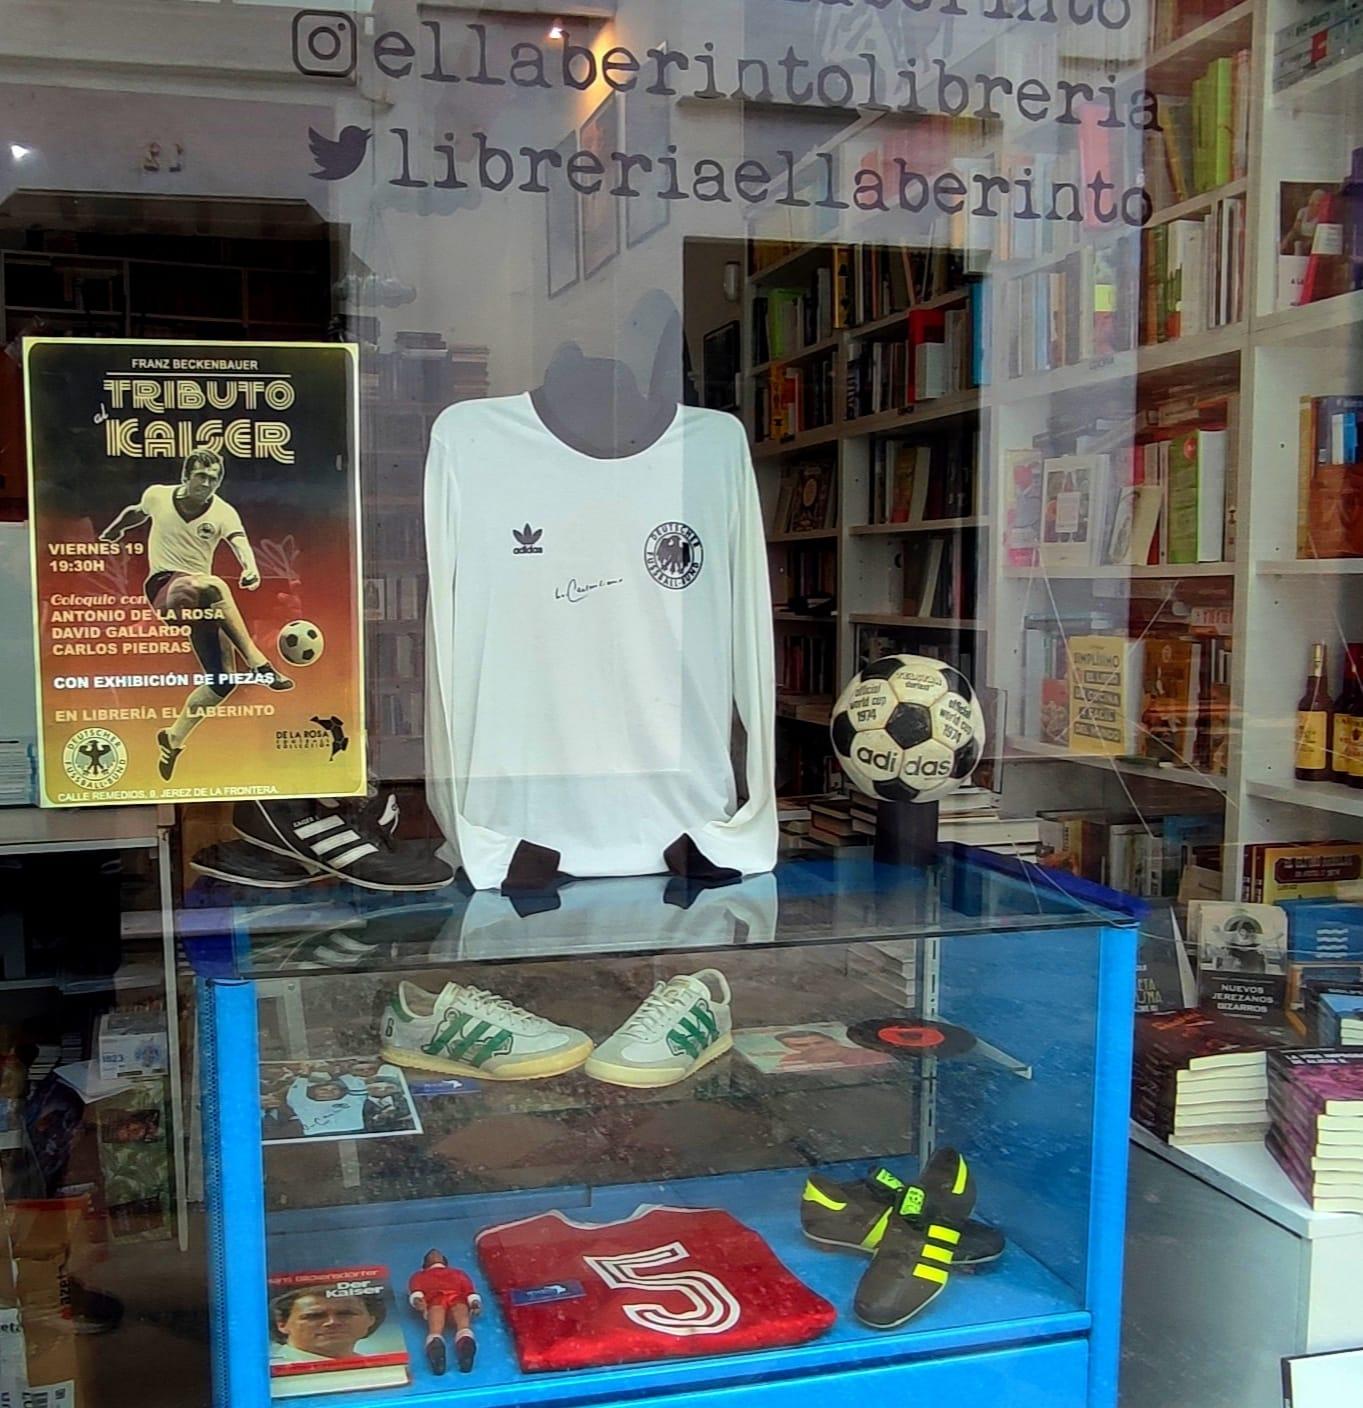 Este viernes, tributo al desaparecido Franz Beckenbauer en la Librería El Laberinto de Jerez